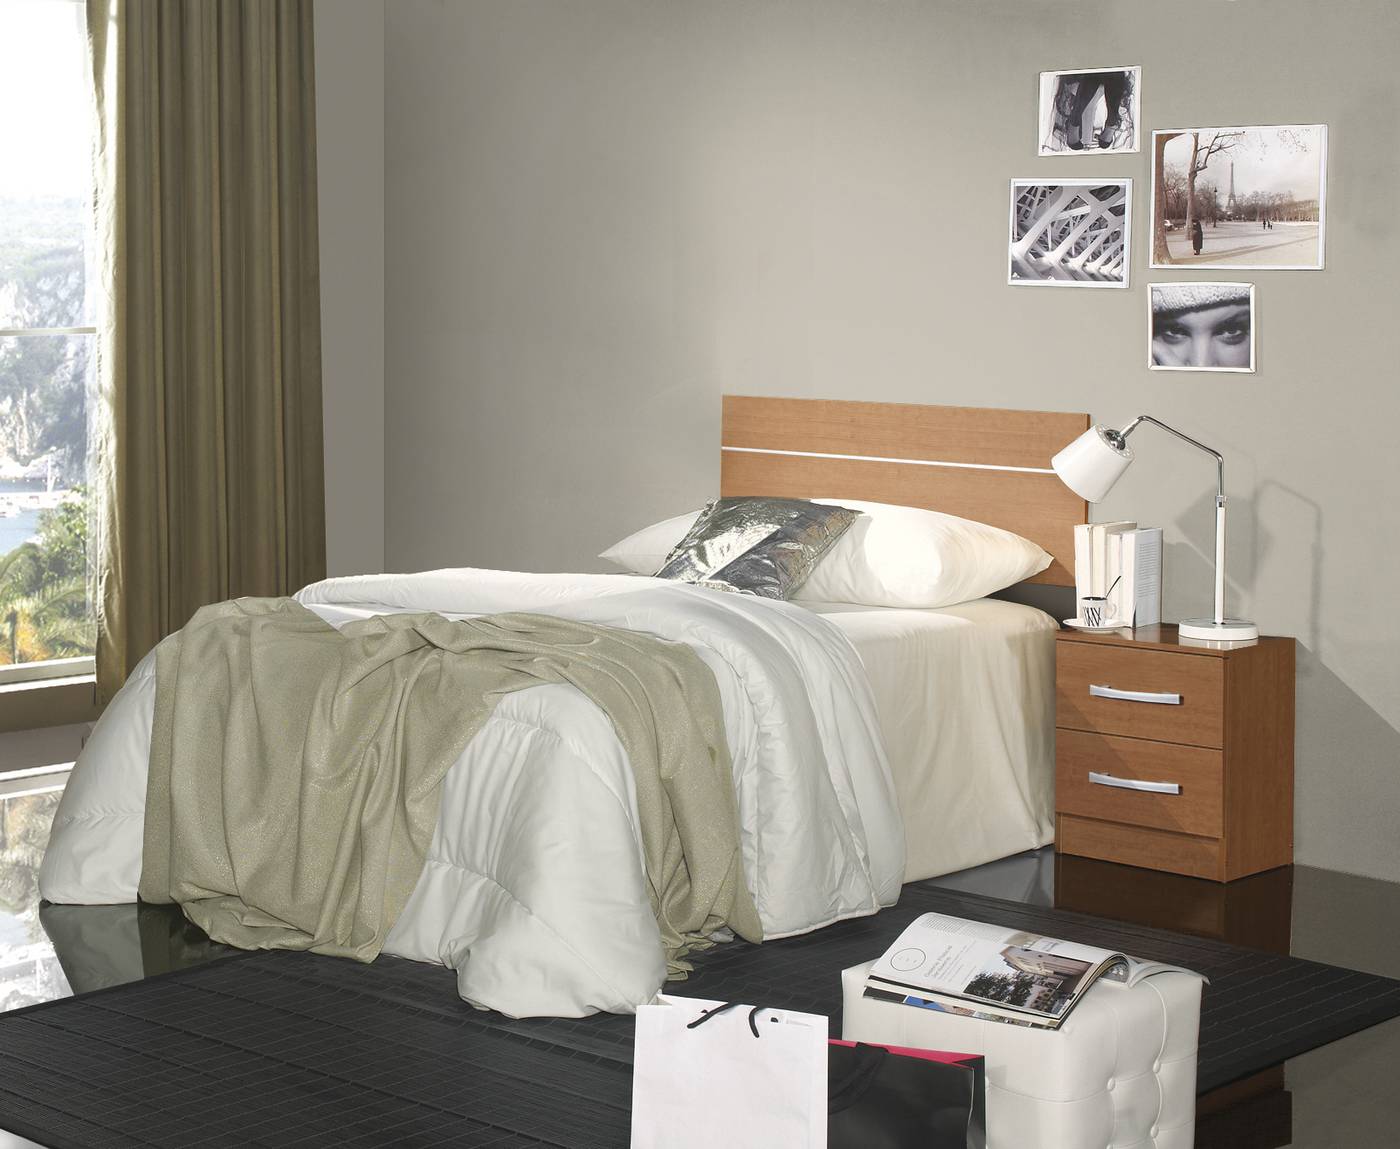 Dormitorio Juvenil Life - Dormitorio juvenil color acacia, blanco o cerezo inglés: mesita 2 cajones y cabecero